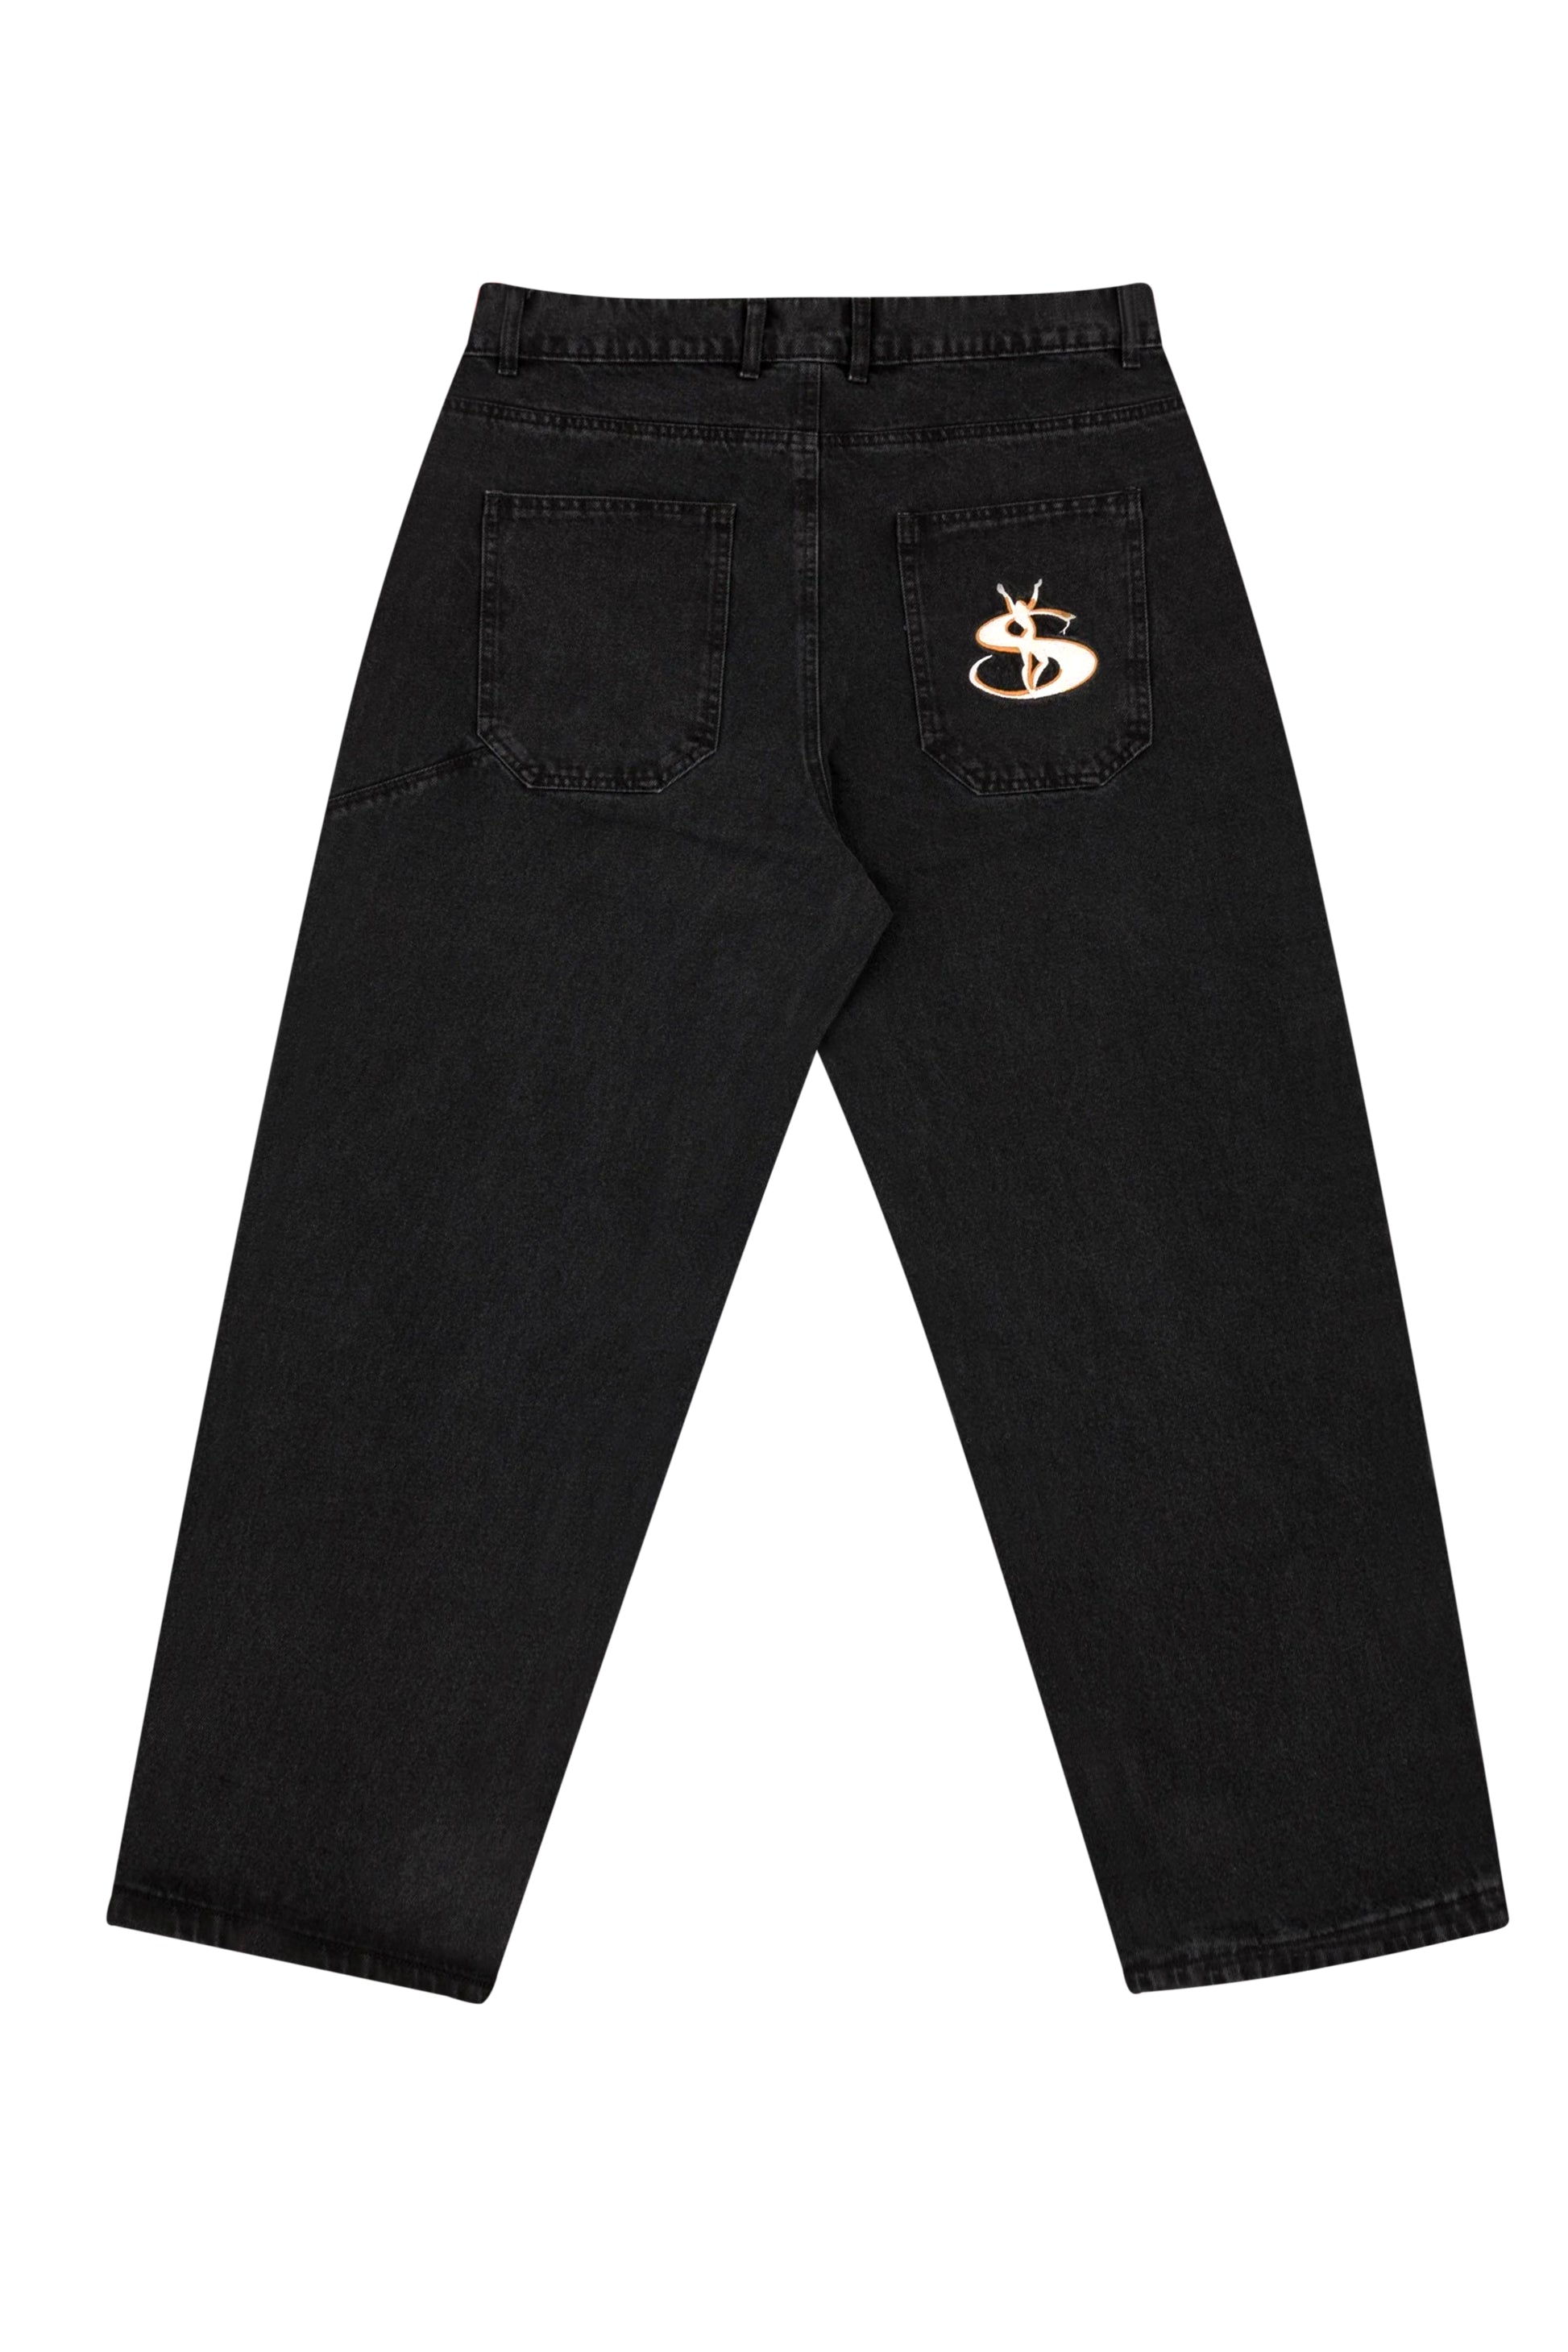 初期版モデル yardsale phantasy jeans blackbutte